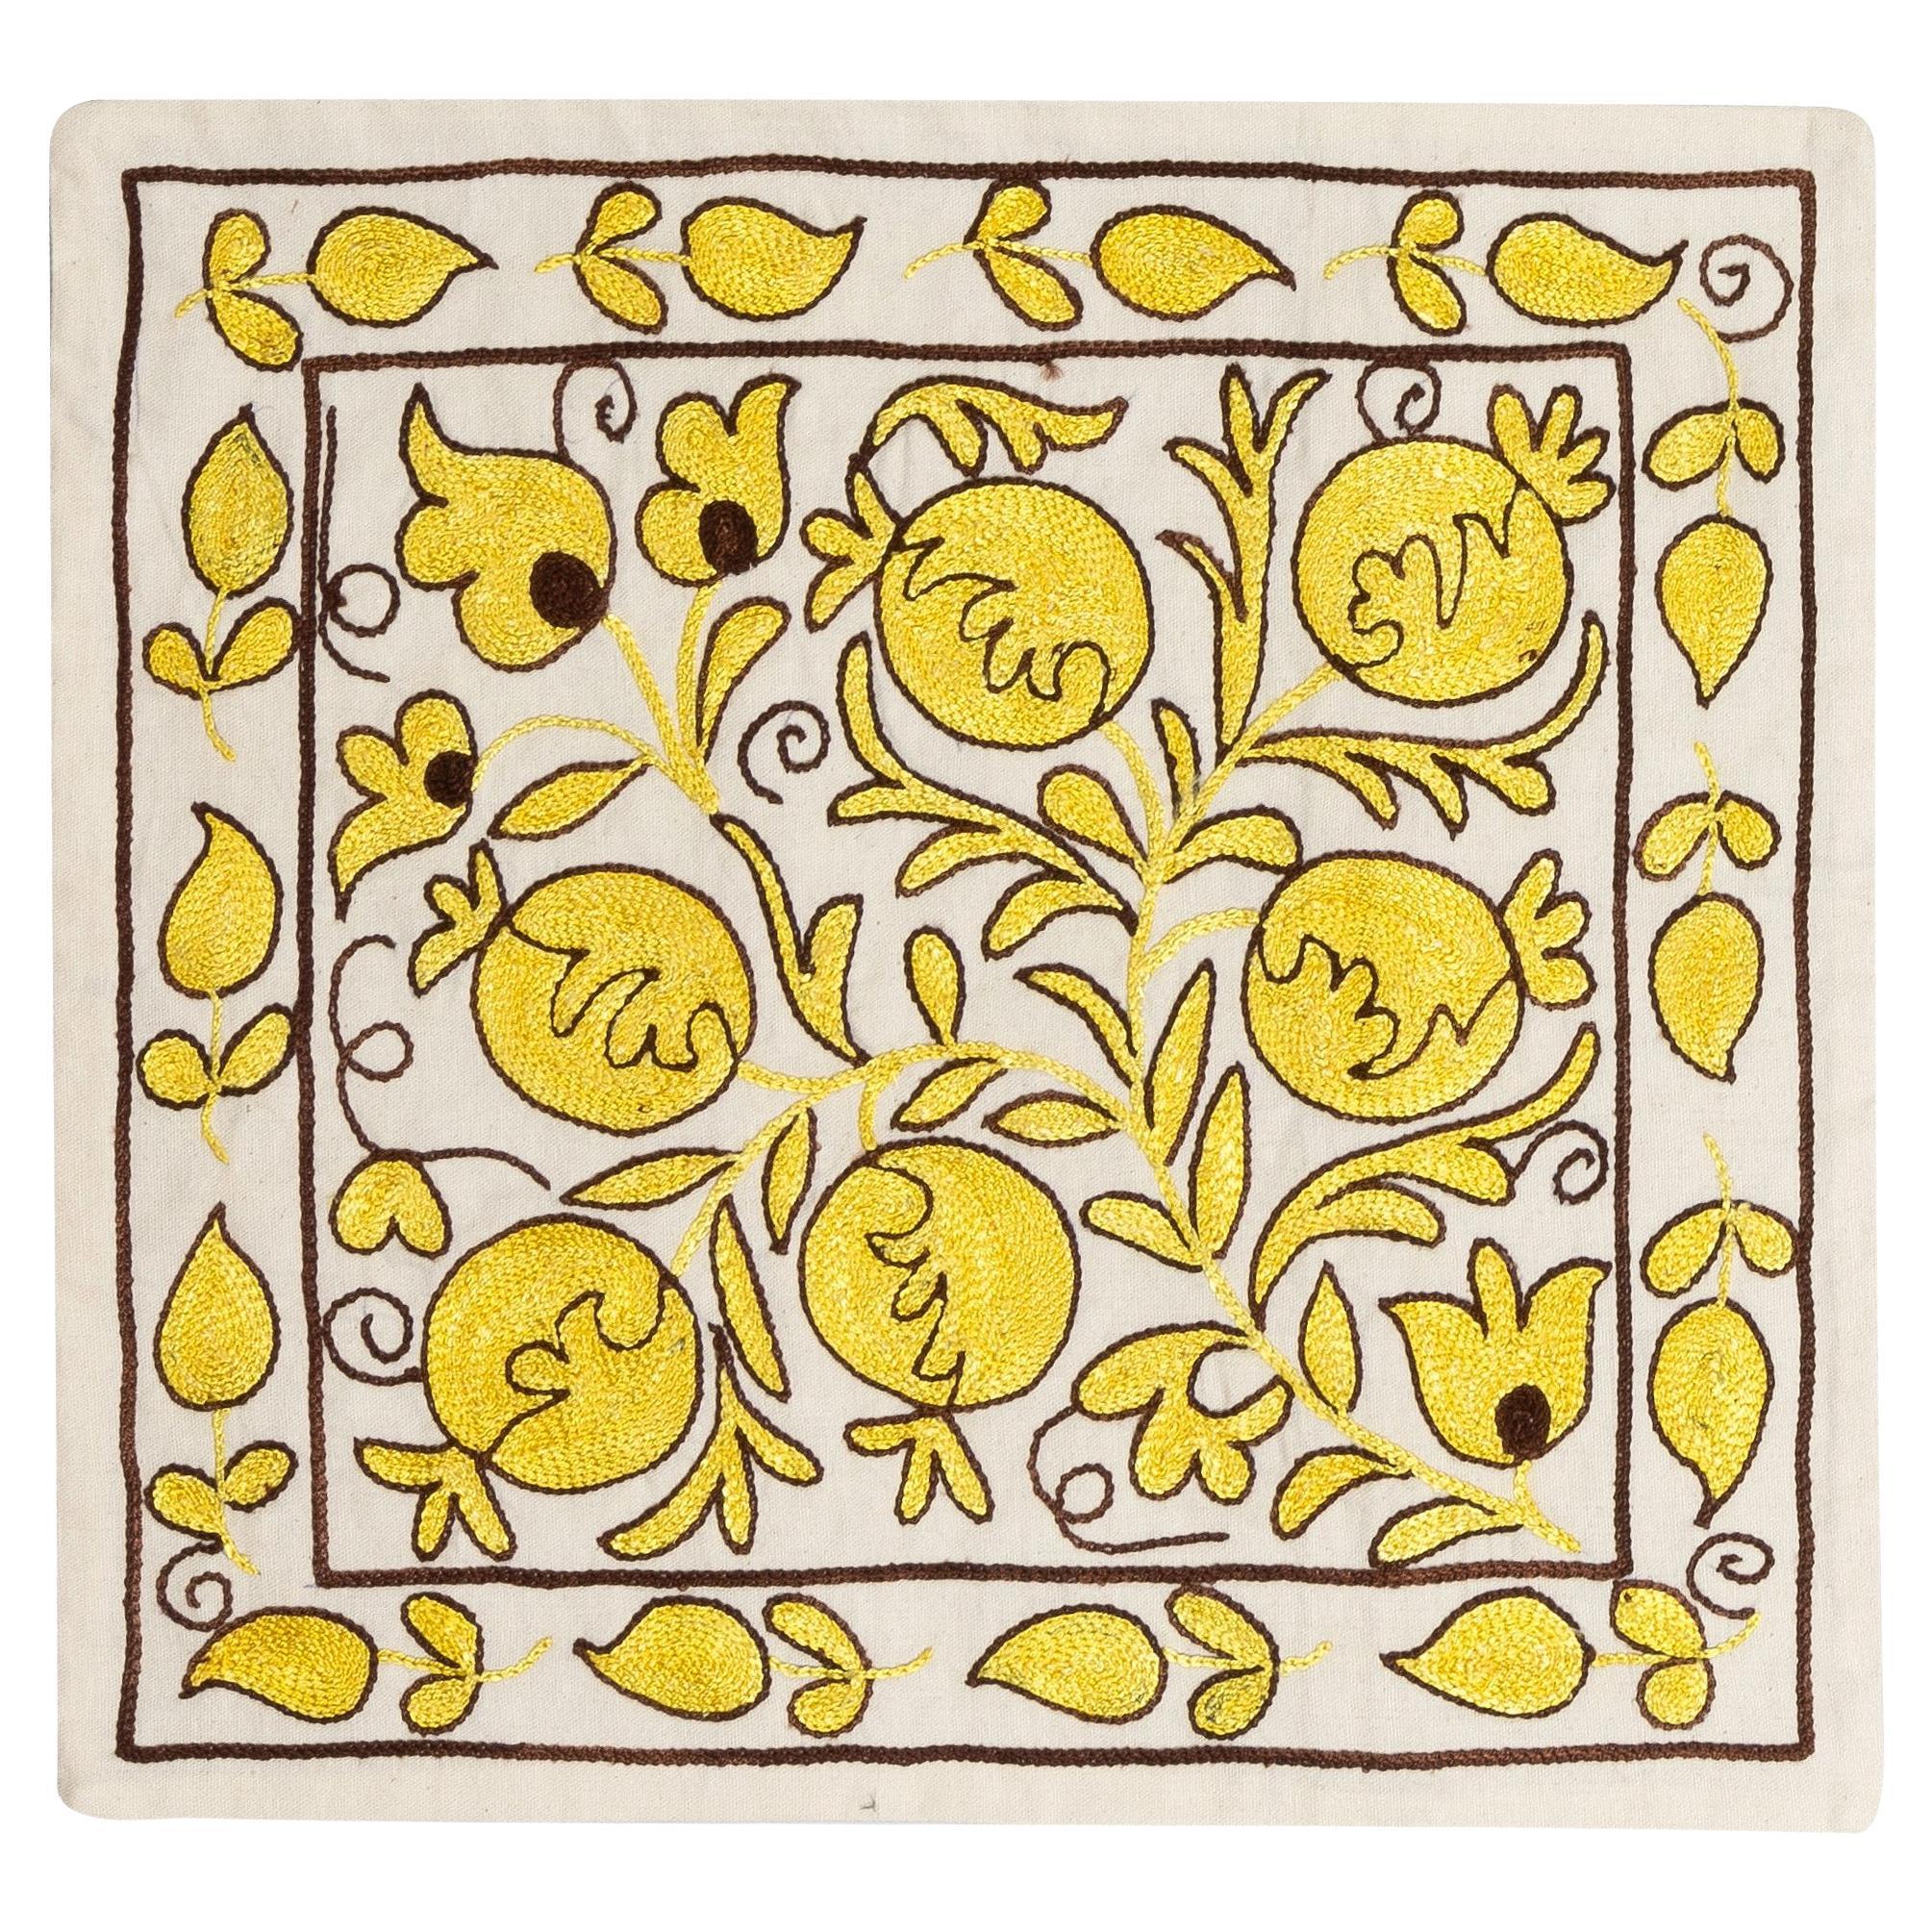 19"x19" Handgefertigter Seiden-Stickerei-Kissenbezug. Suzani-Kissen in Creme & Gelb